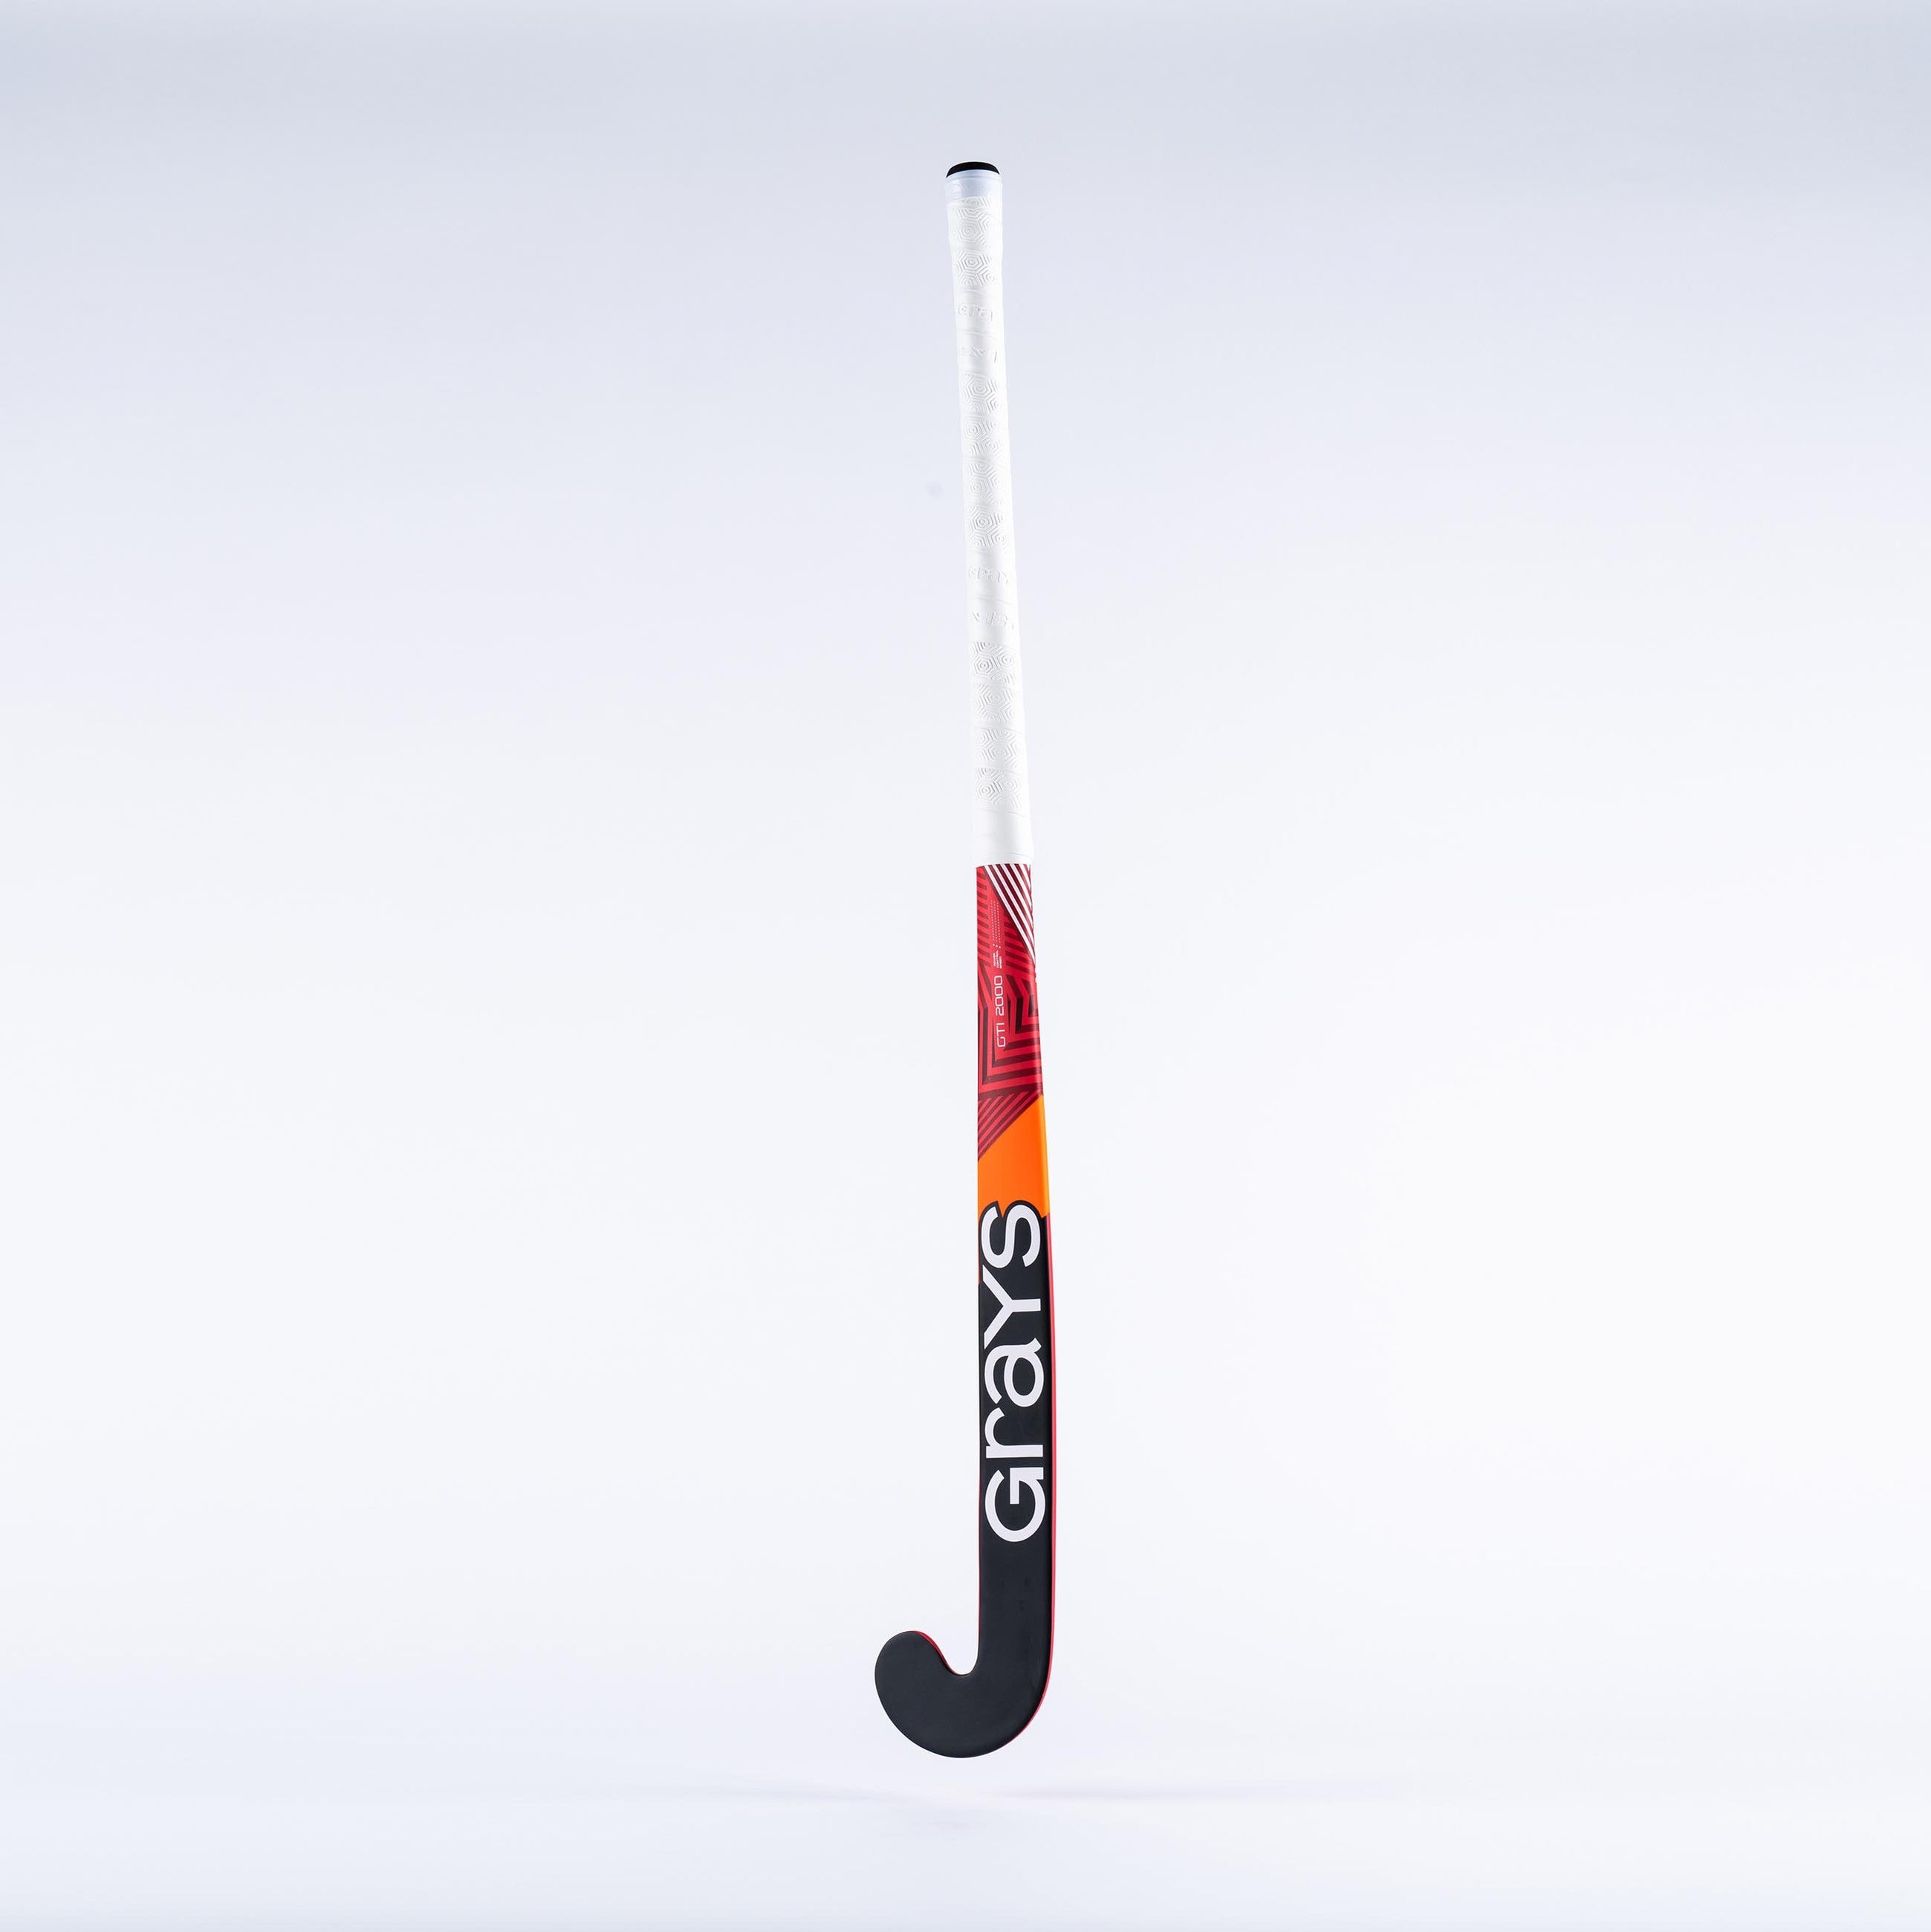 GTi2000 Ultrabow junior composite indoor hockeystick